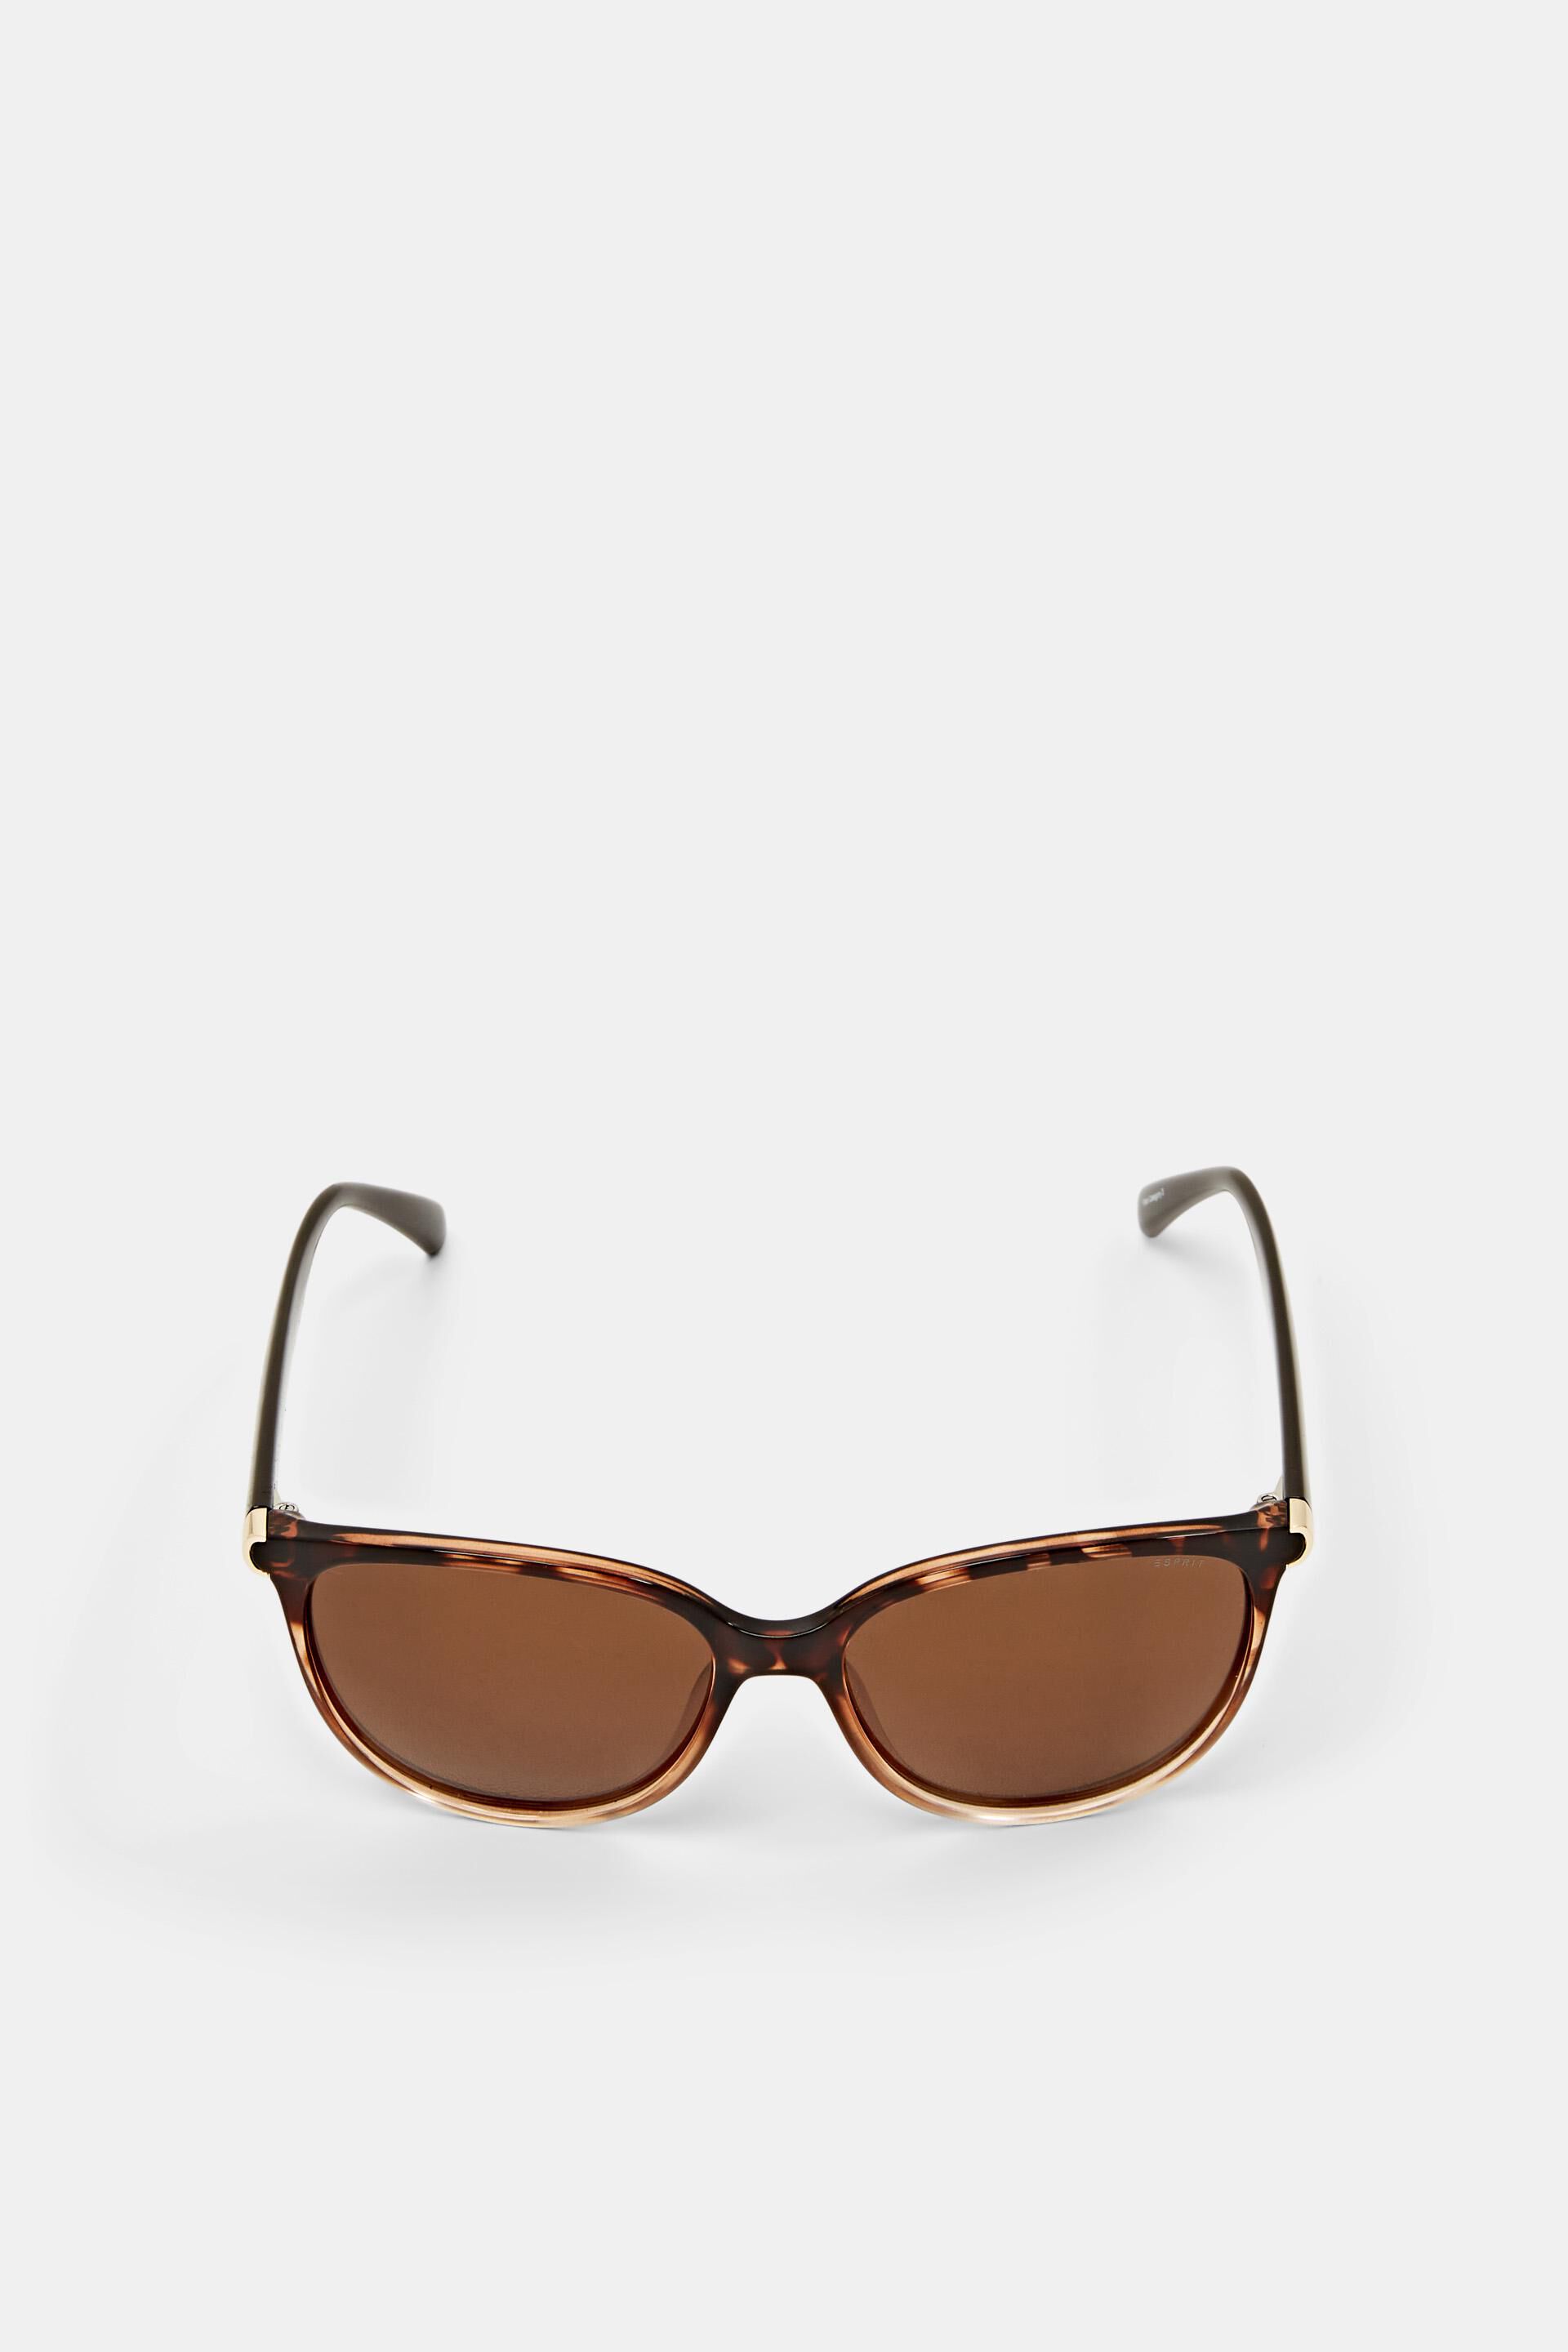 Esprit Online Store Sunglasses with polarised lenses